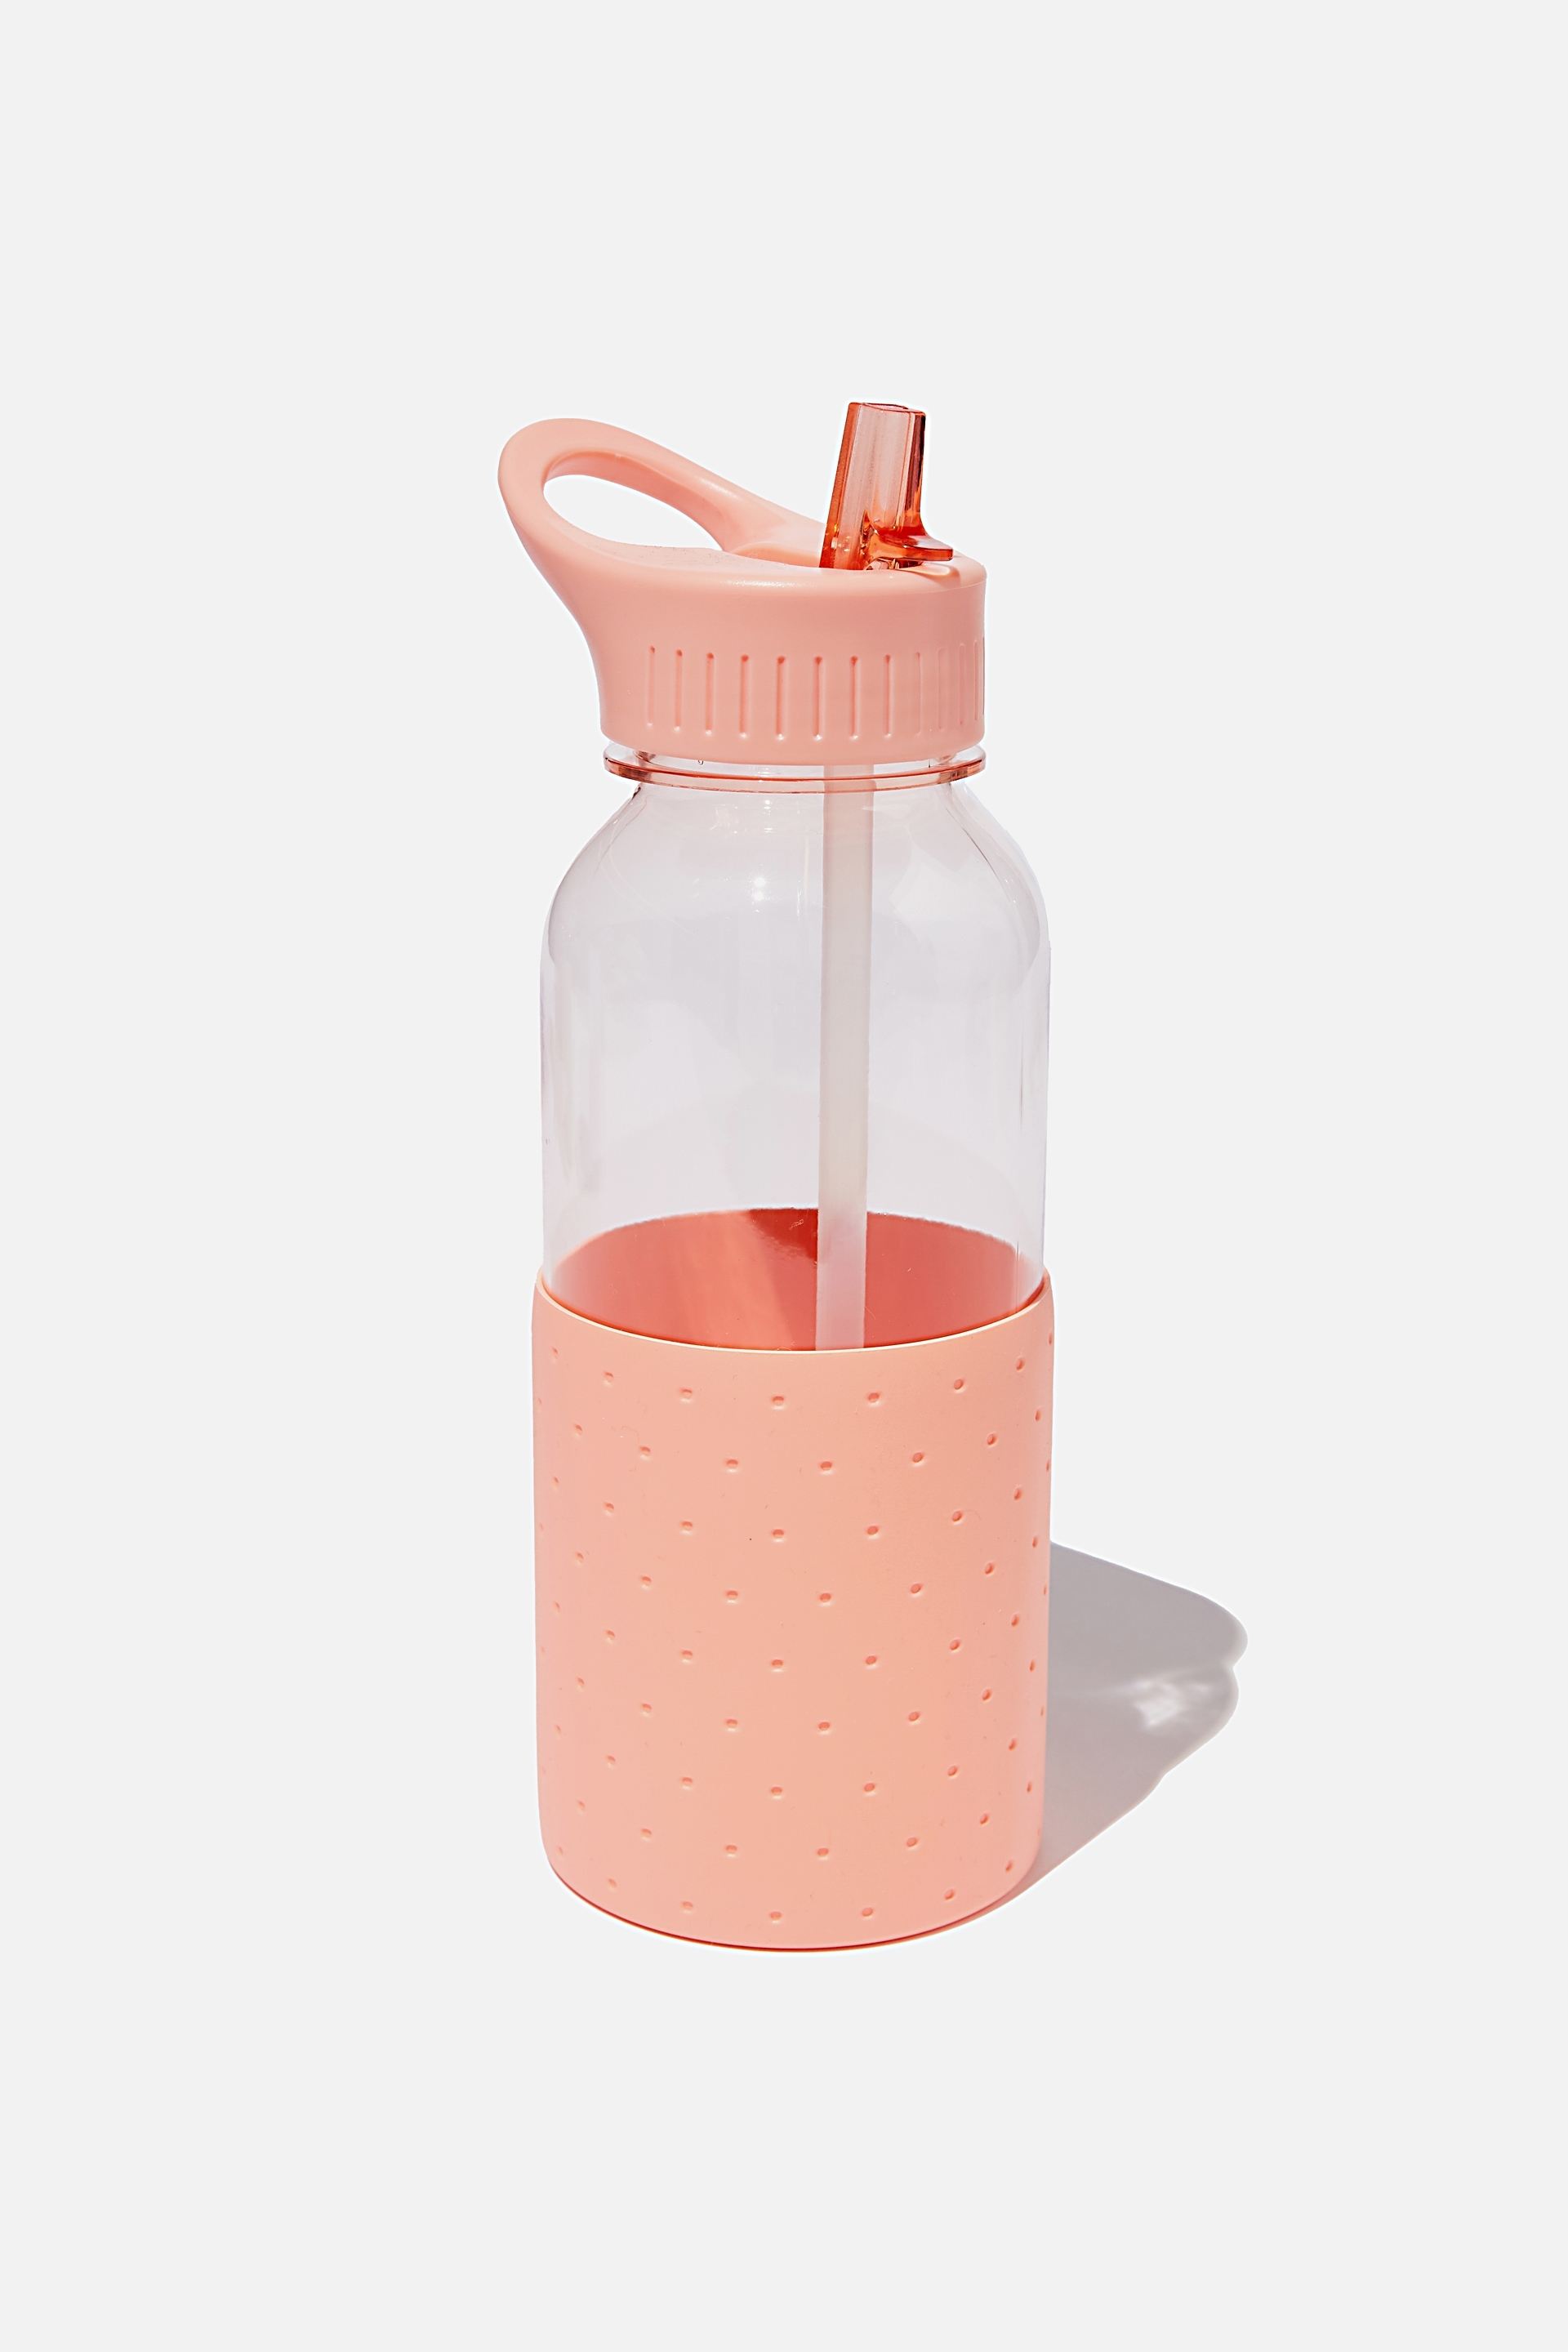 Typo - Premium Drink It Up Bottle - Polka peach candy